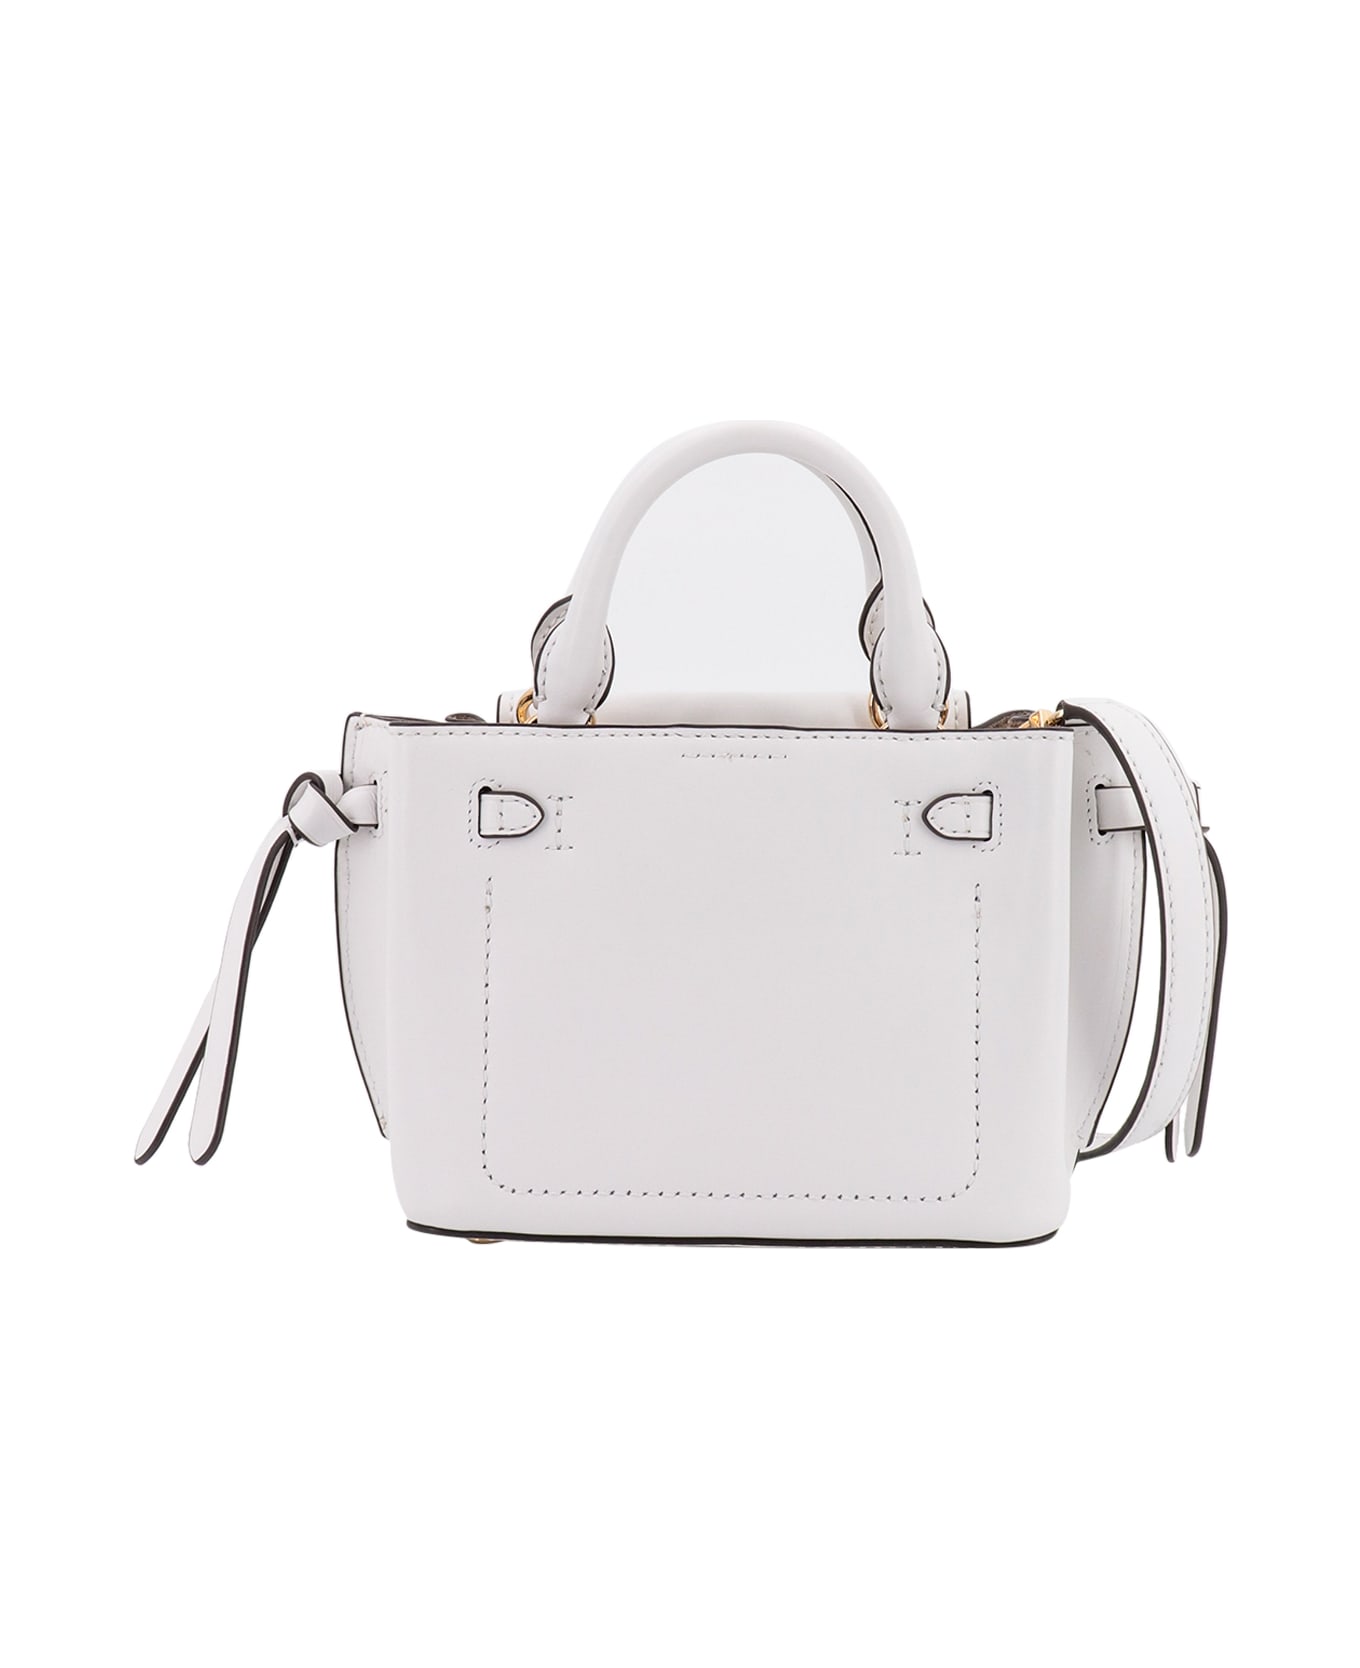 Michael Kors Handbag - White